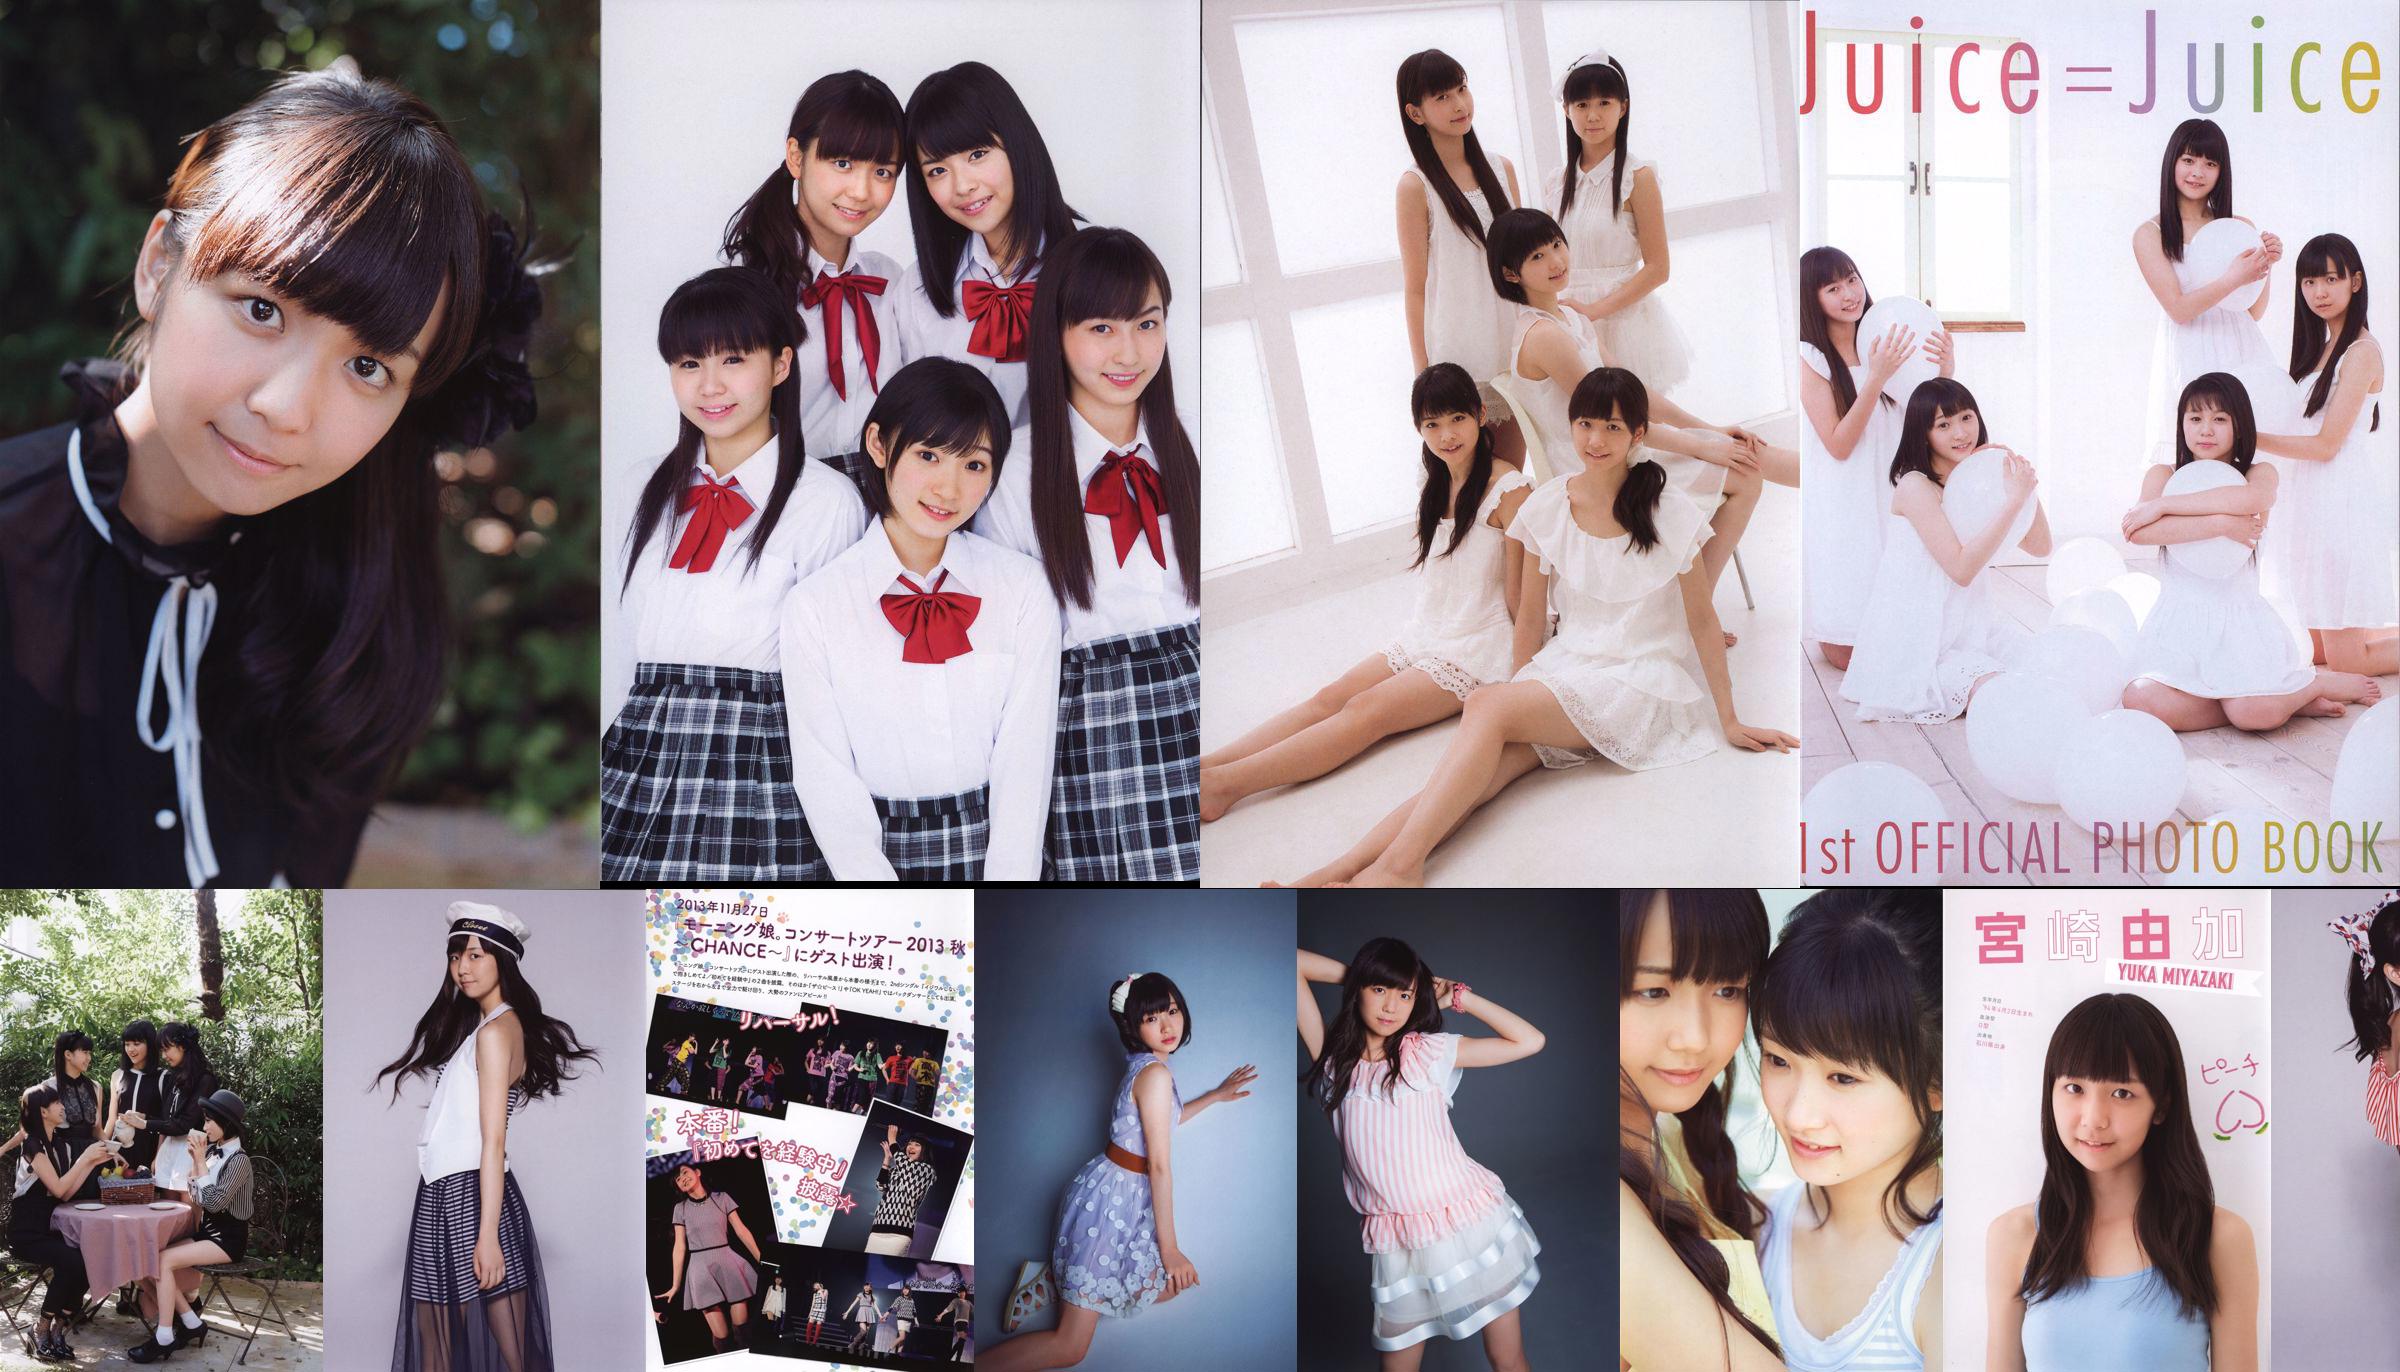 日本の美少女グループJuice = Juice「OFFICIALPHOTOBOOK」 No.1b904f ページ36